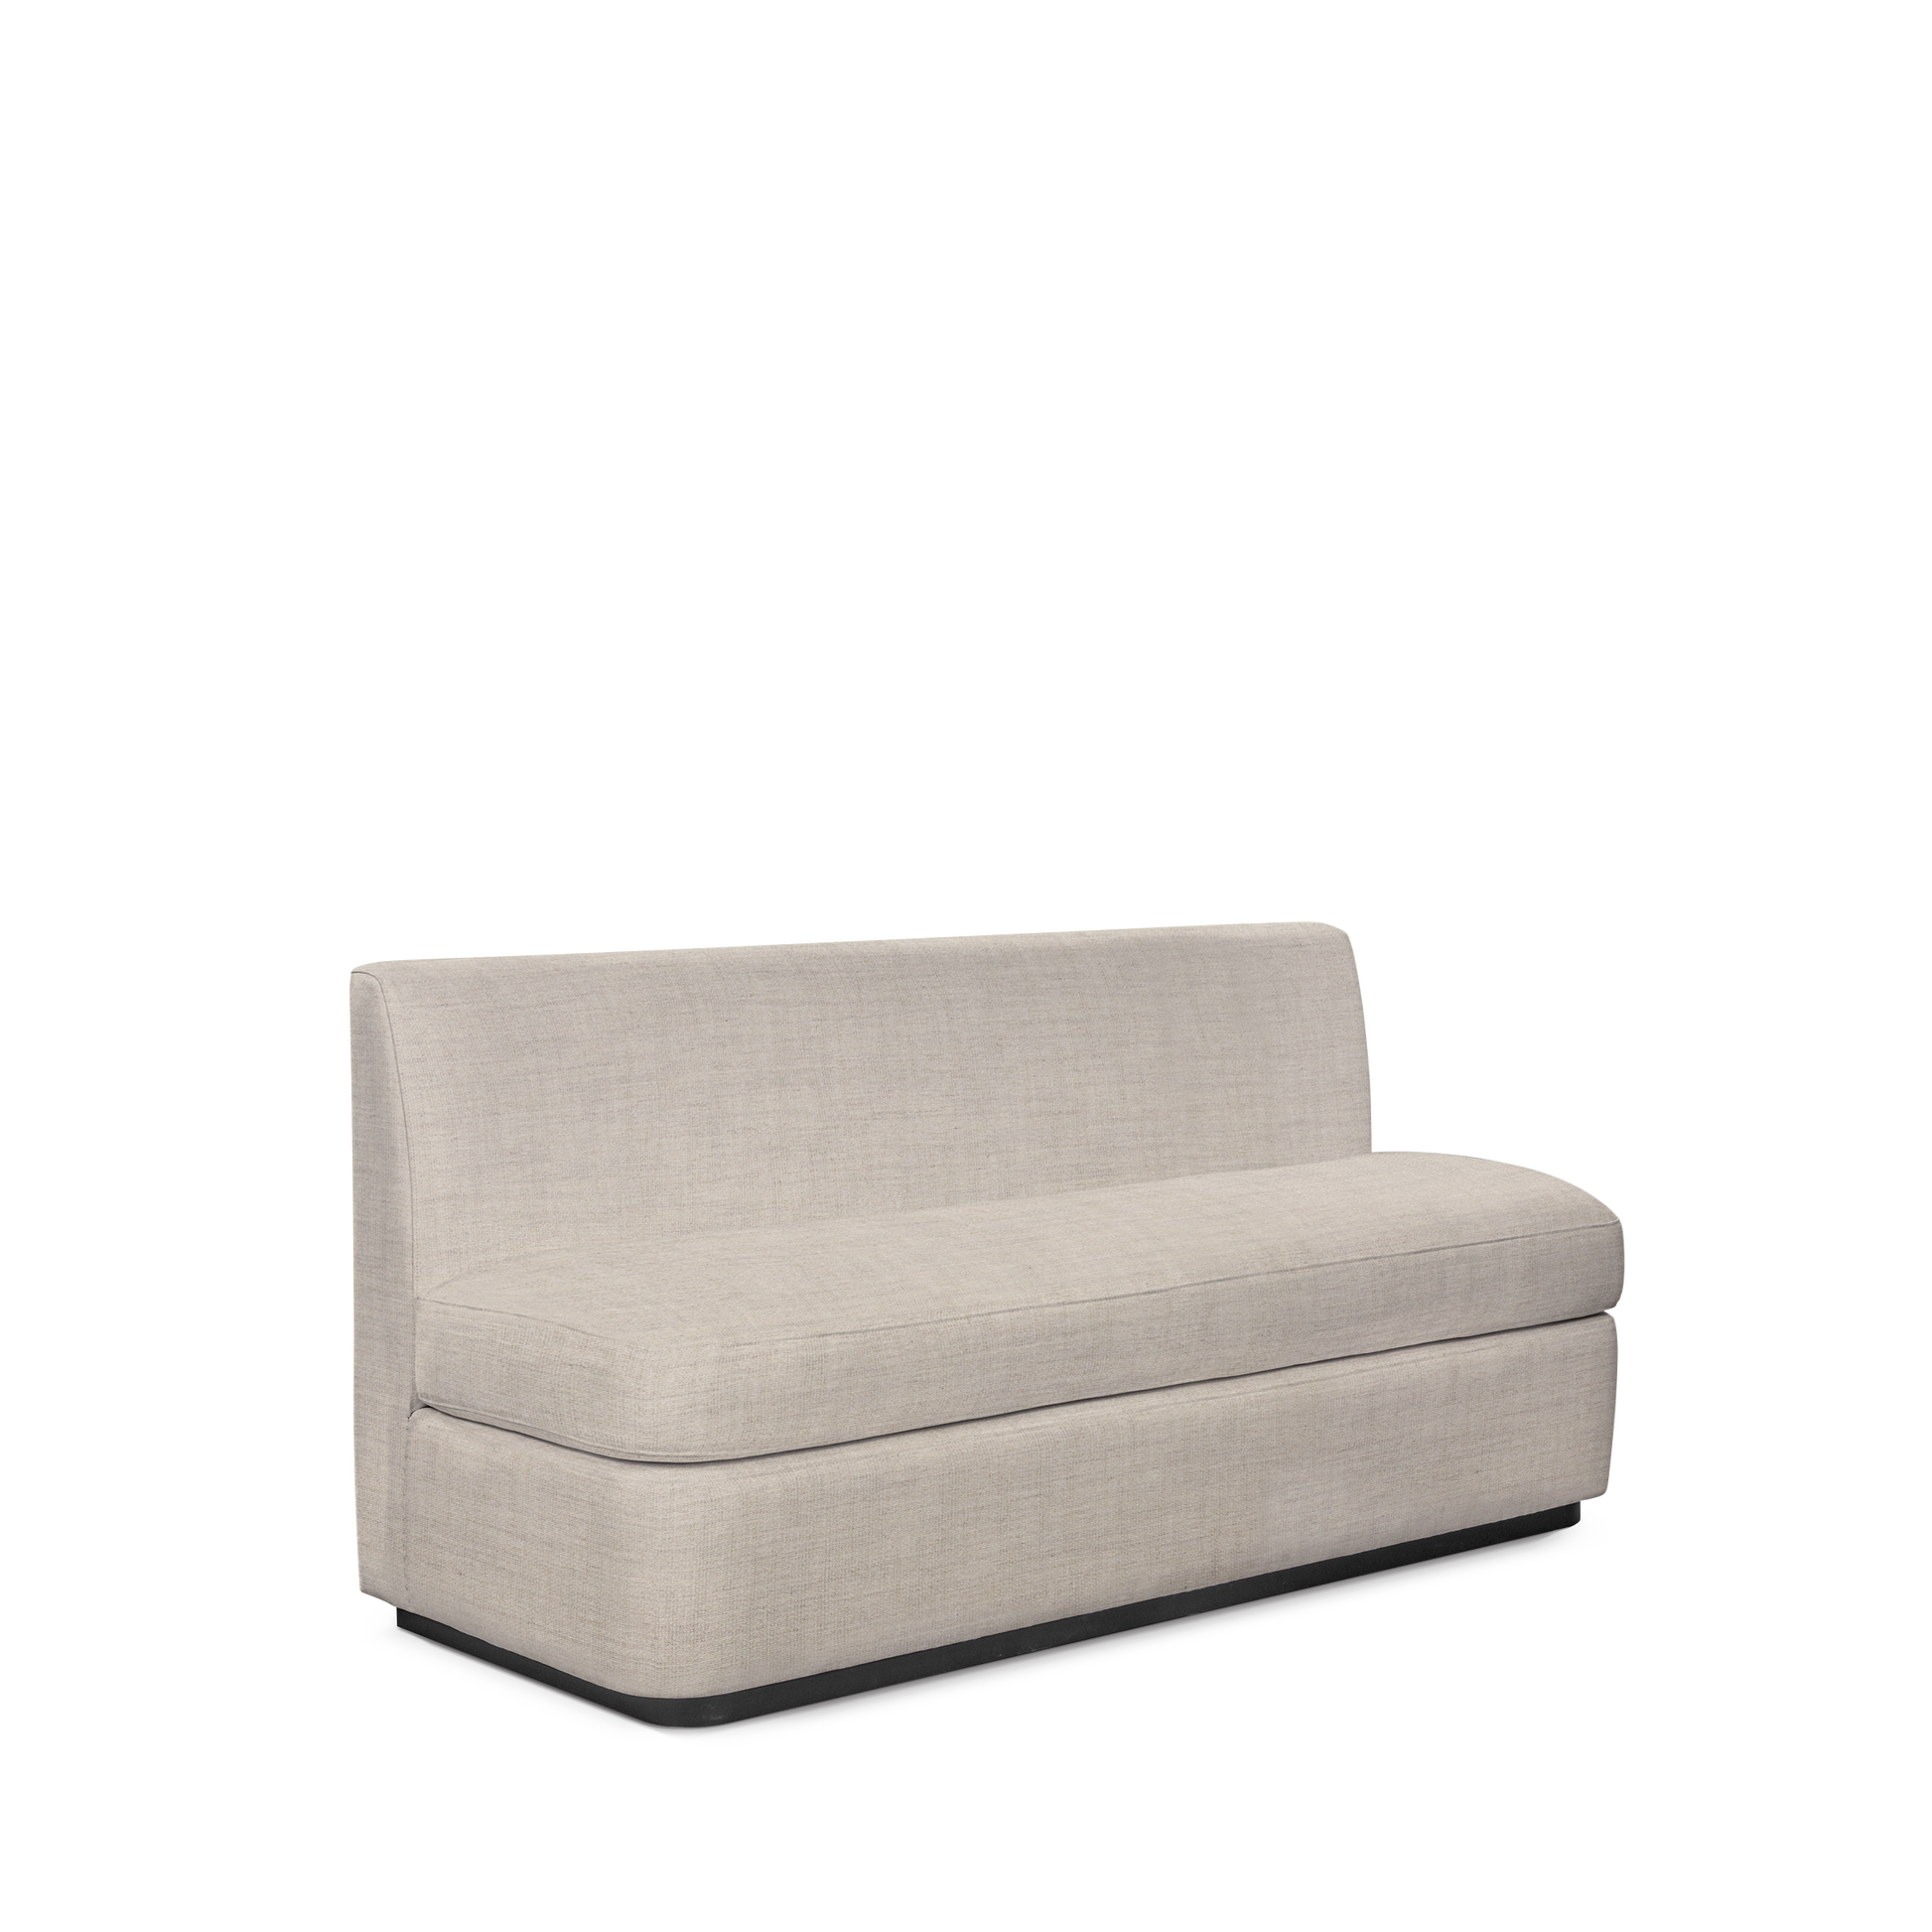  CALMA KITCHEN 3-seater sofa with taupe textile